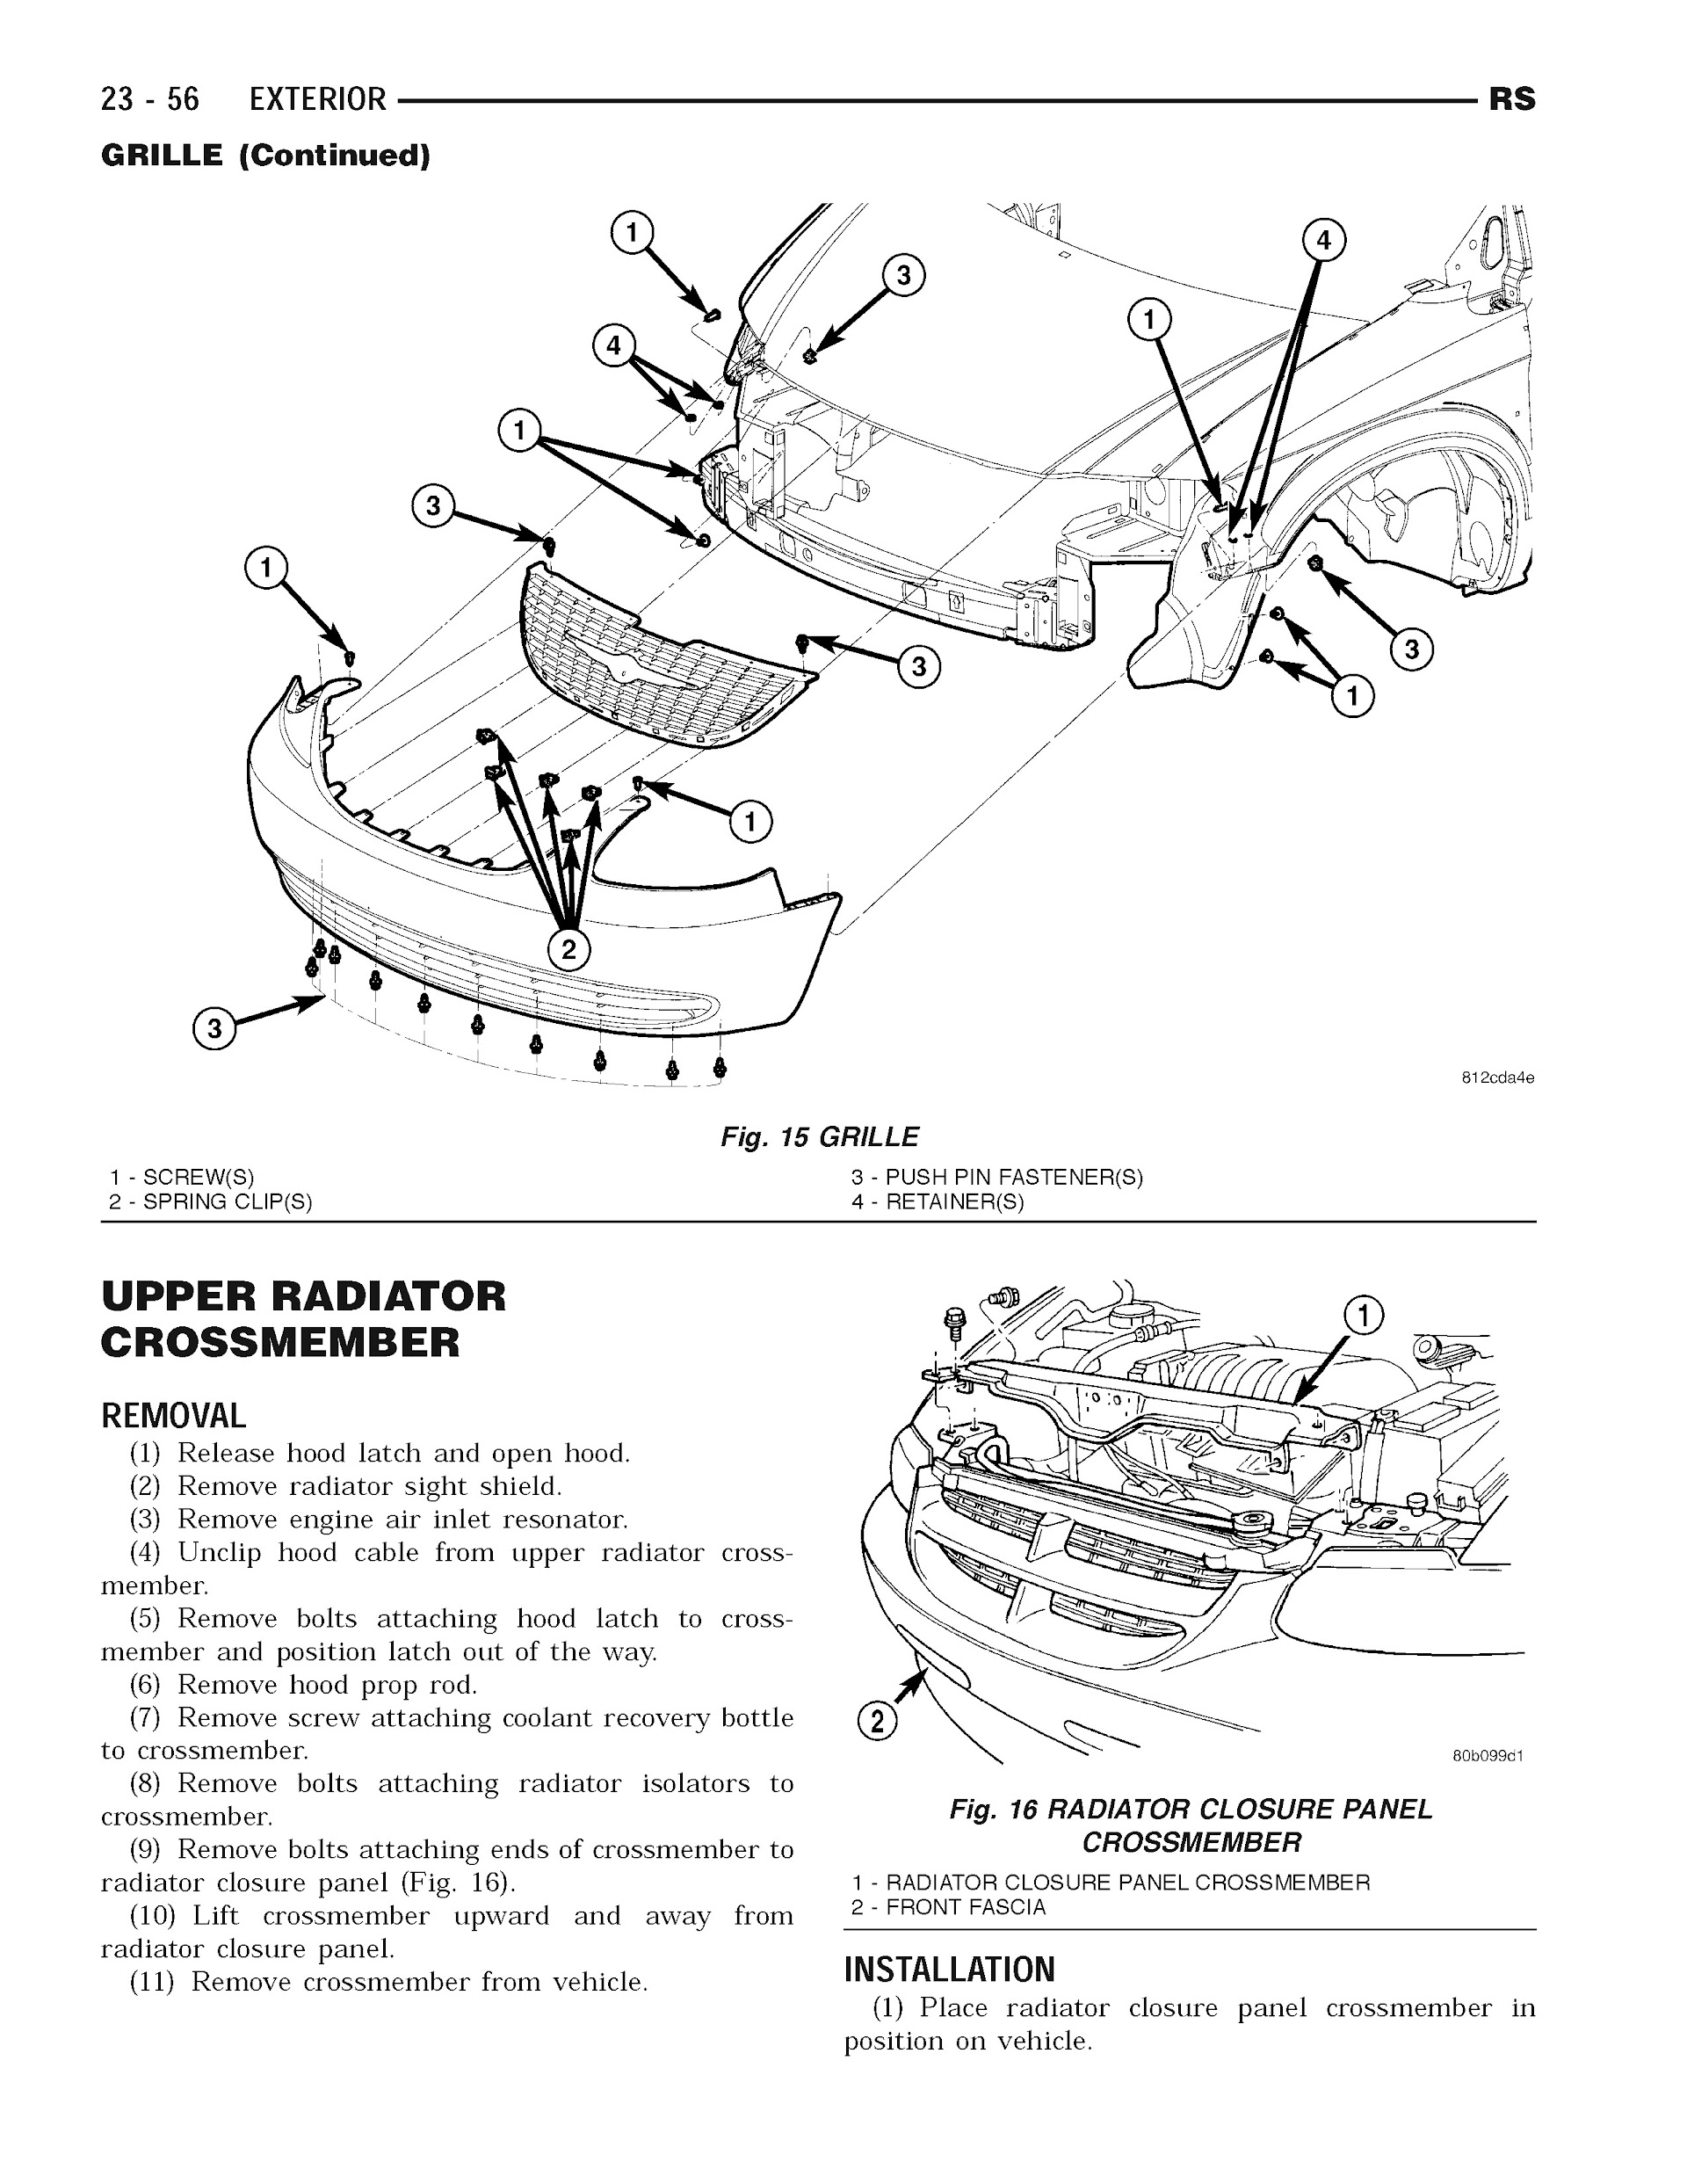 2003-2007 Dodge Grand Caravan Repair Manual, Front Grill Replacement